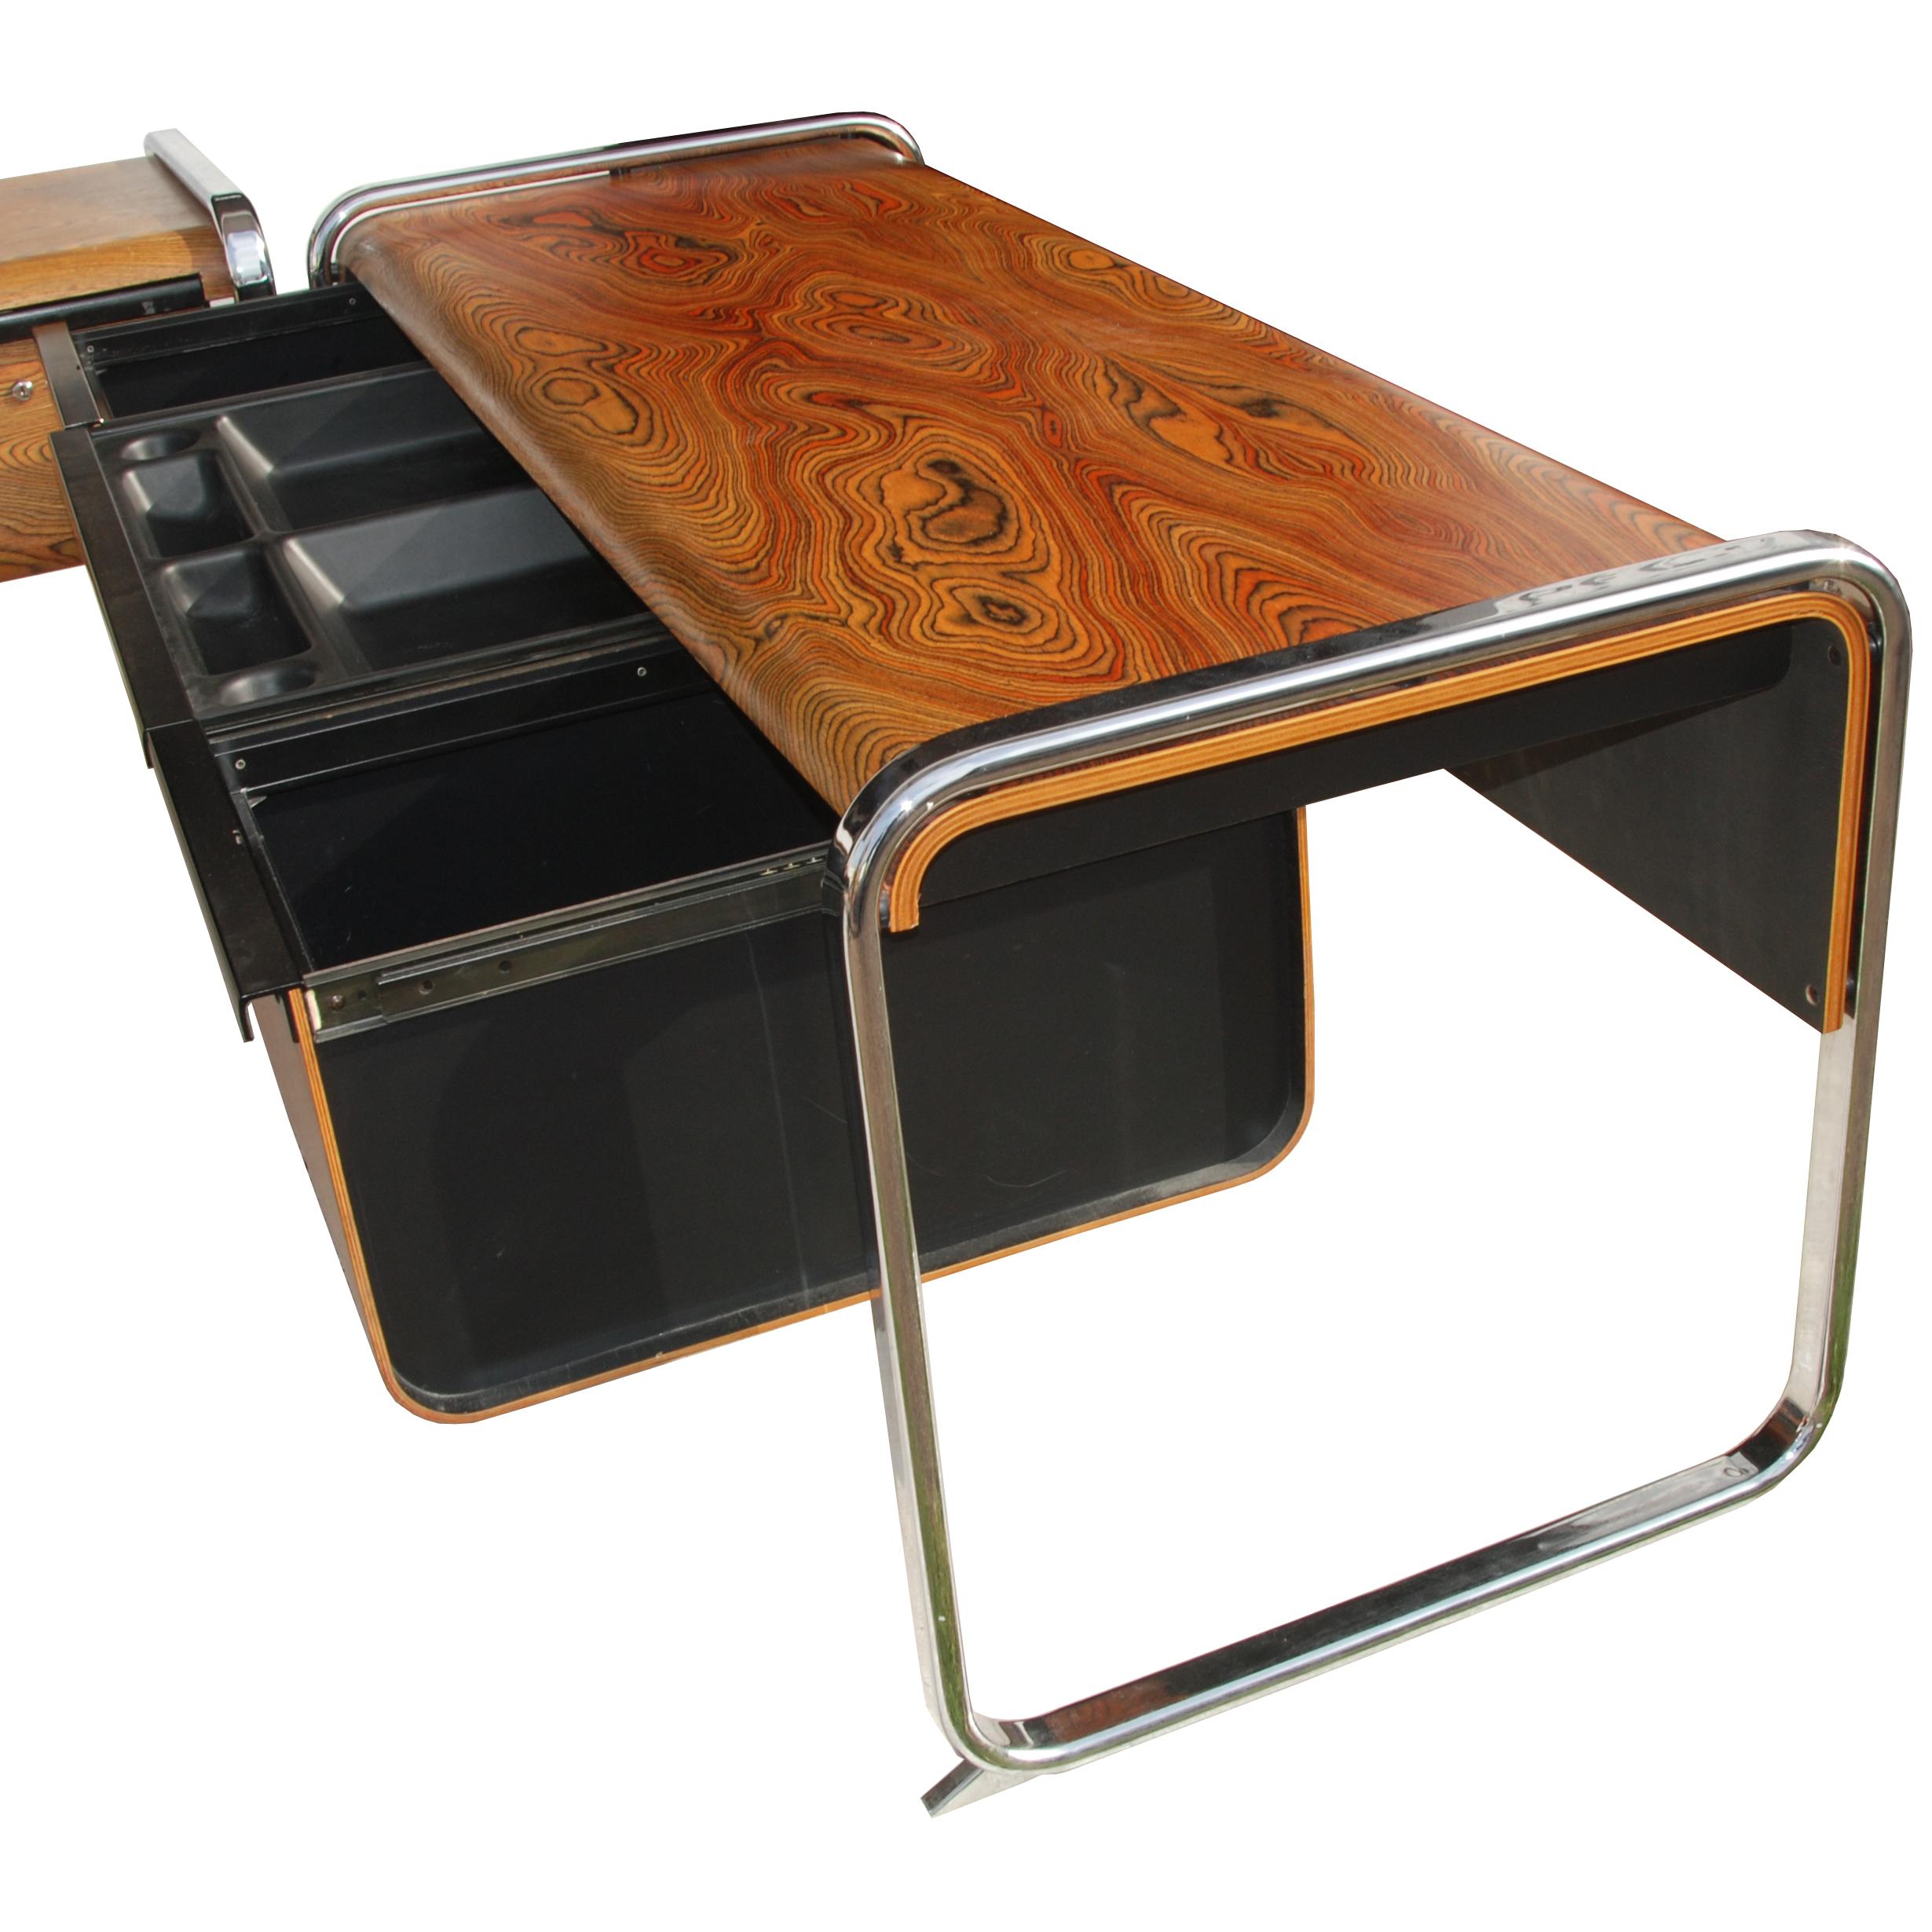 Mid-Century Modern Peter Protzmann Zebra Wood and Chrome Desk for Herman Miller